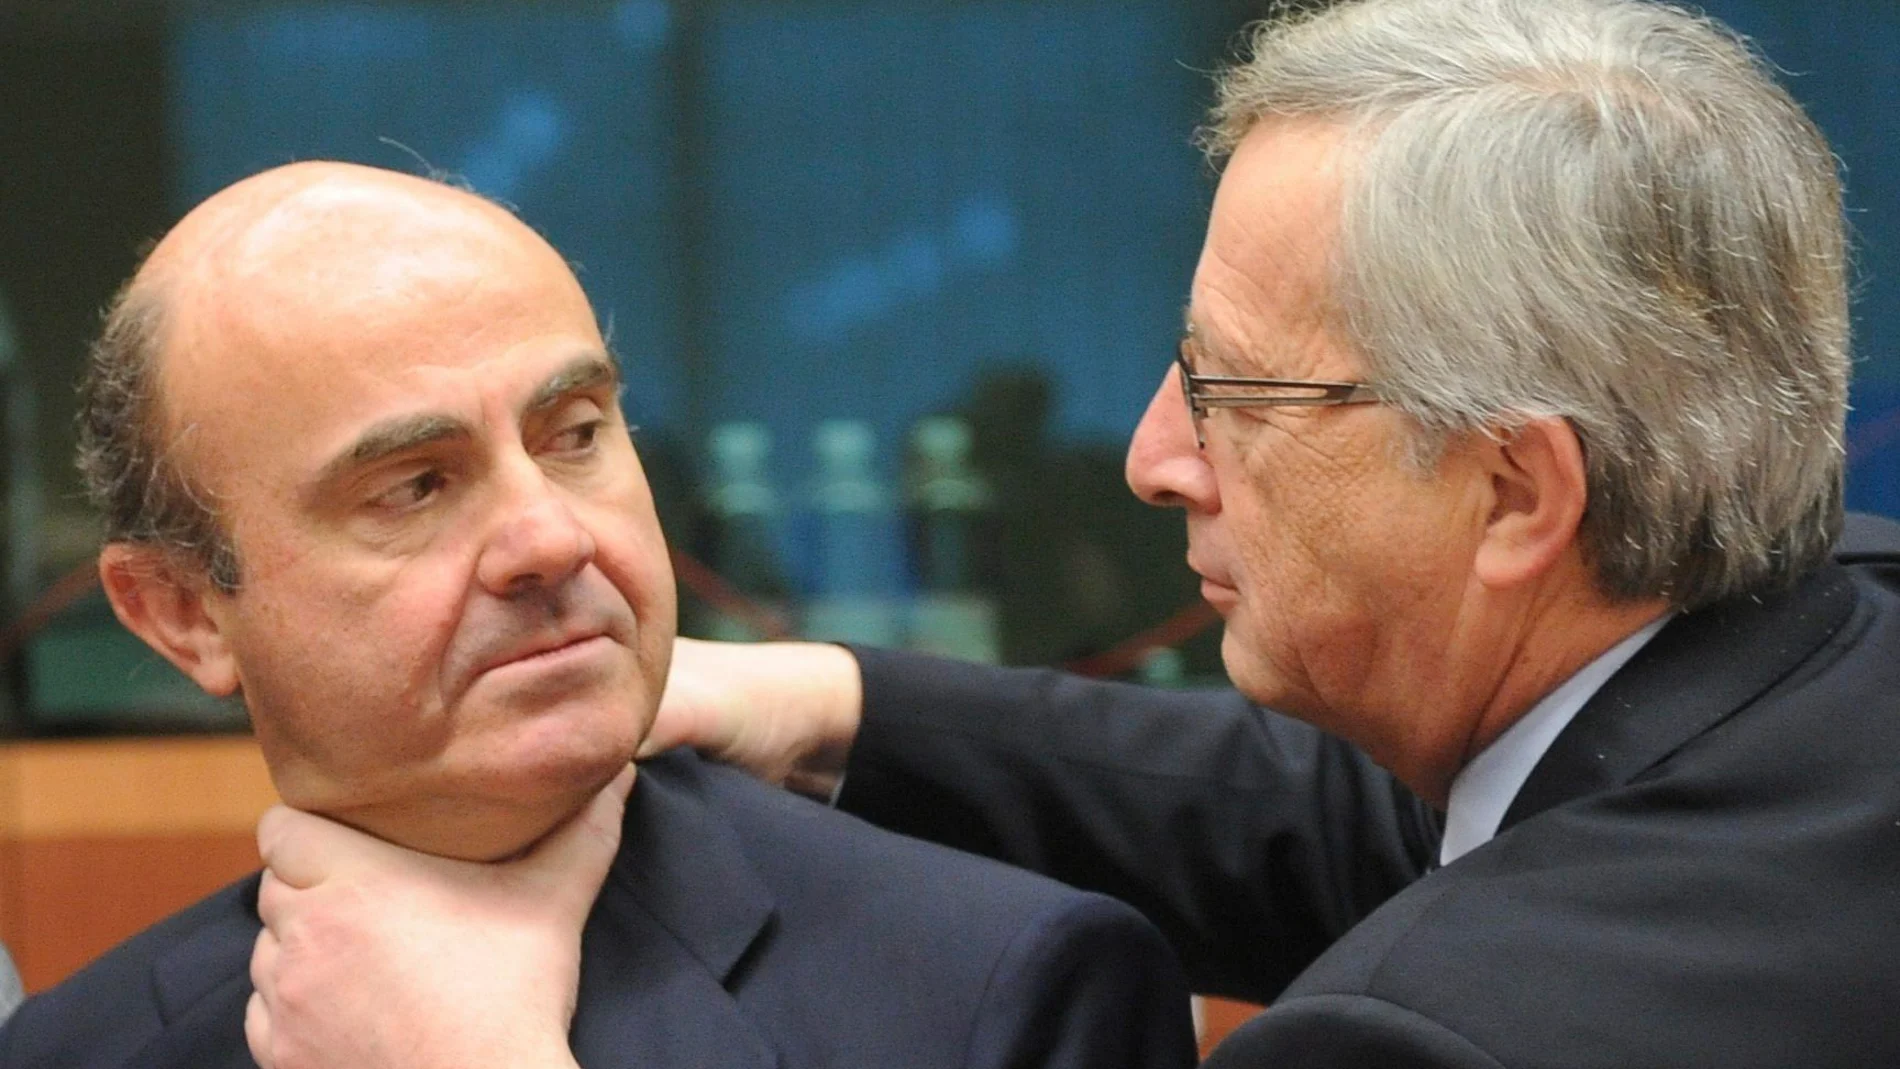 El presidente del Eurogrupo Jean-Claude Juncker (derecha) bromea con el ministro español de Economía, Luis de Guindos, al comienzo de la reunión del Eurogrupo en Bruselas, Bélgica, 12 de marzo de 2012